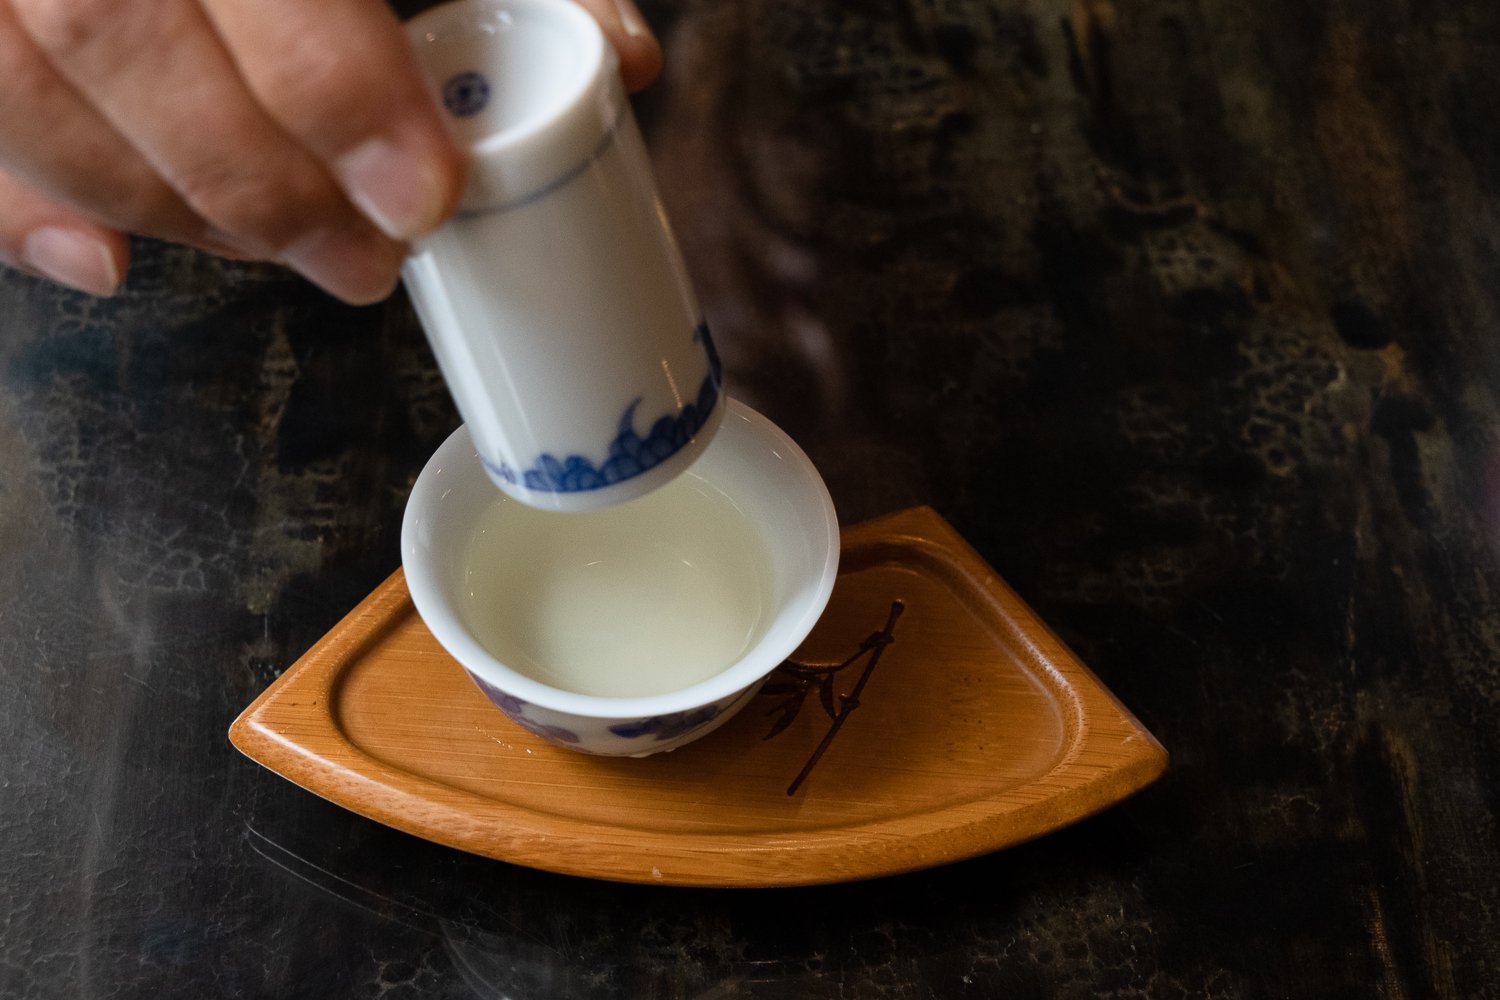 最初は聞香杯にお茶が入っているので、茶杯と呼ばれる茶碗にお茶を移したあと聞香杯で香りを楽しむ。